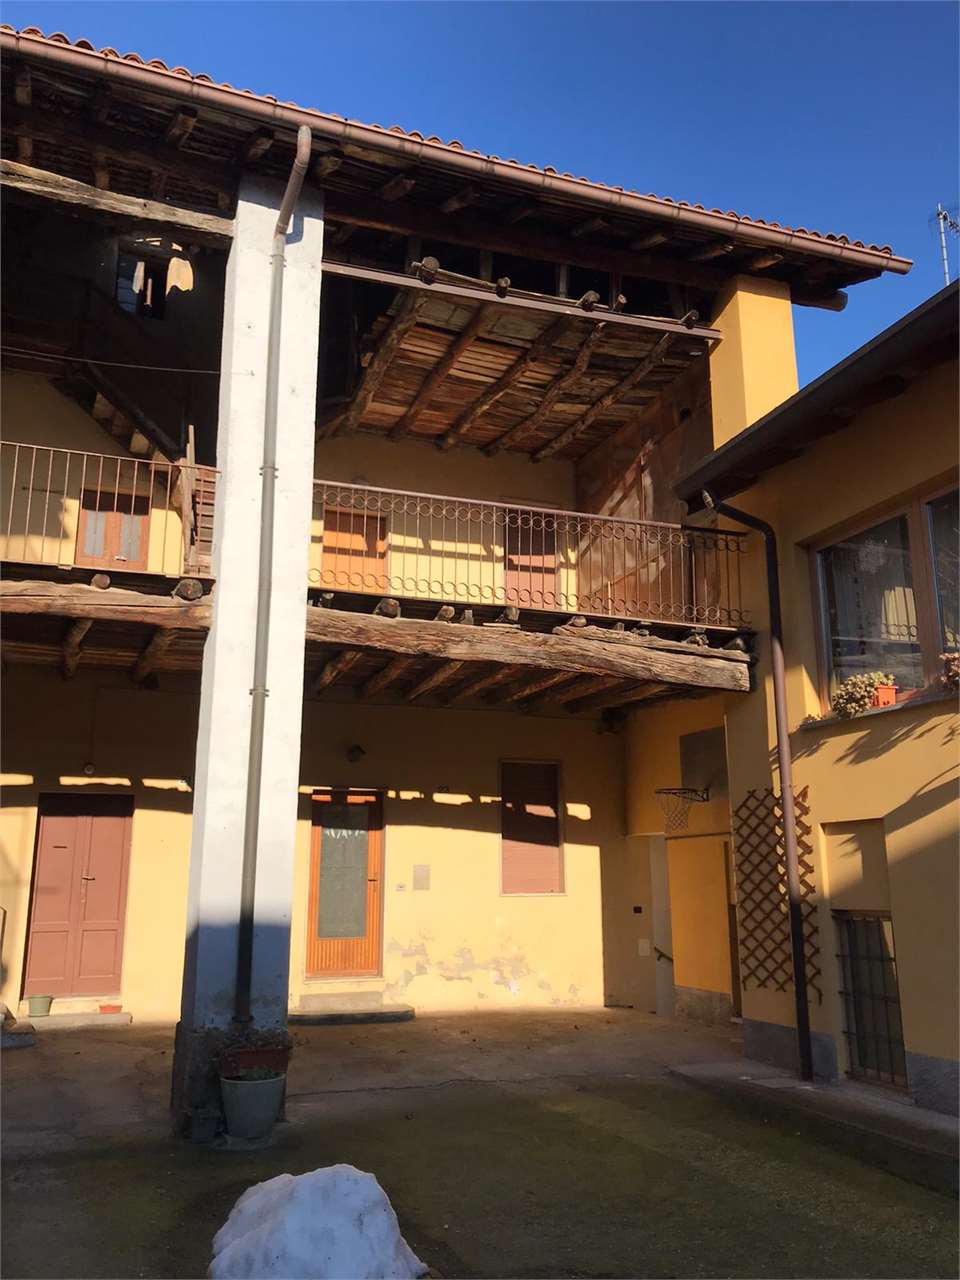 Rustico / Casale in vendita a Capiago Intimiano, 4 locali, prezzo € 45.000 | PortaleAgenzieImmobiliari.it